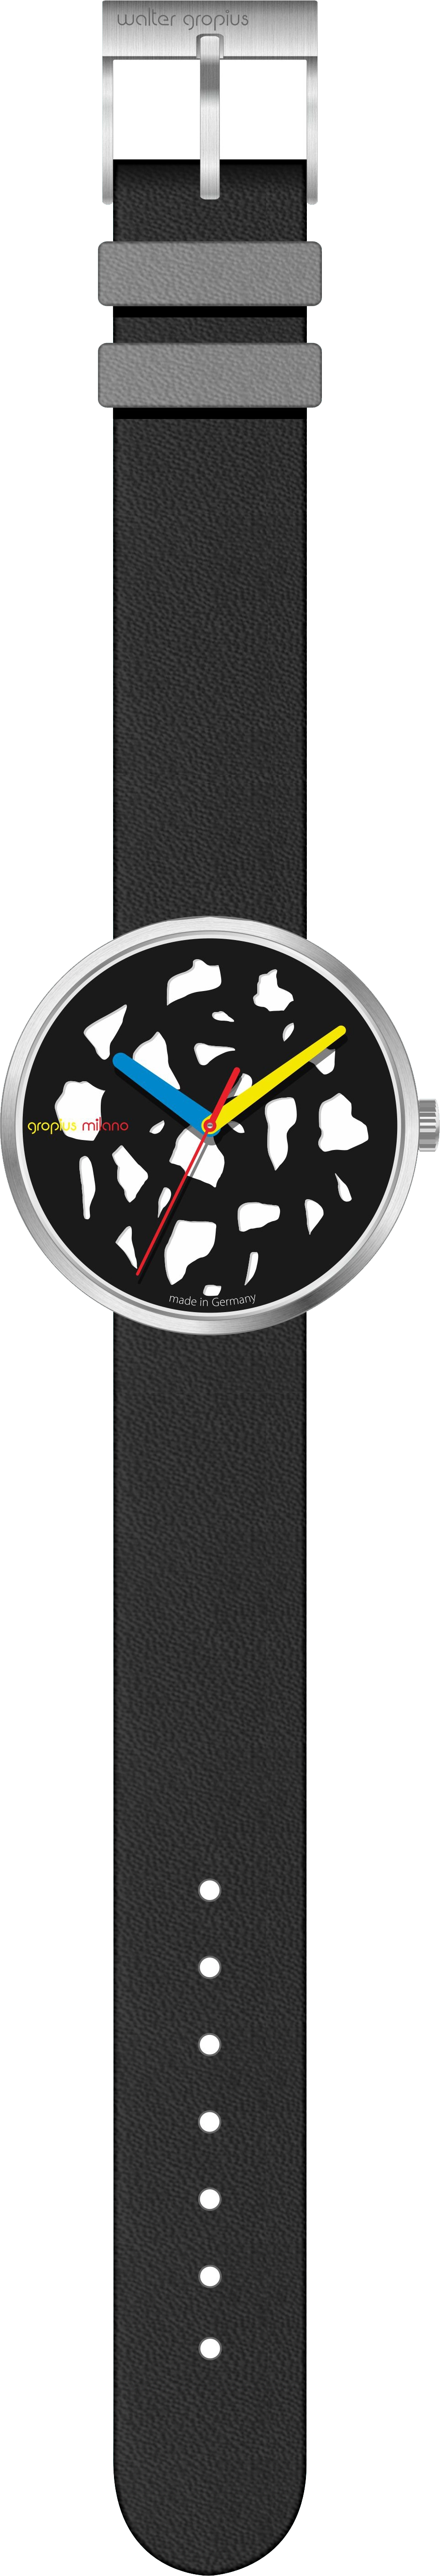 Walter Gropius Uhr Rohe Materialien LB WG 023-01 